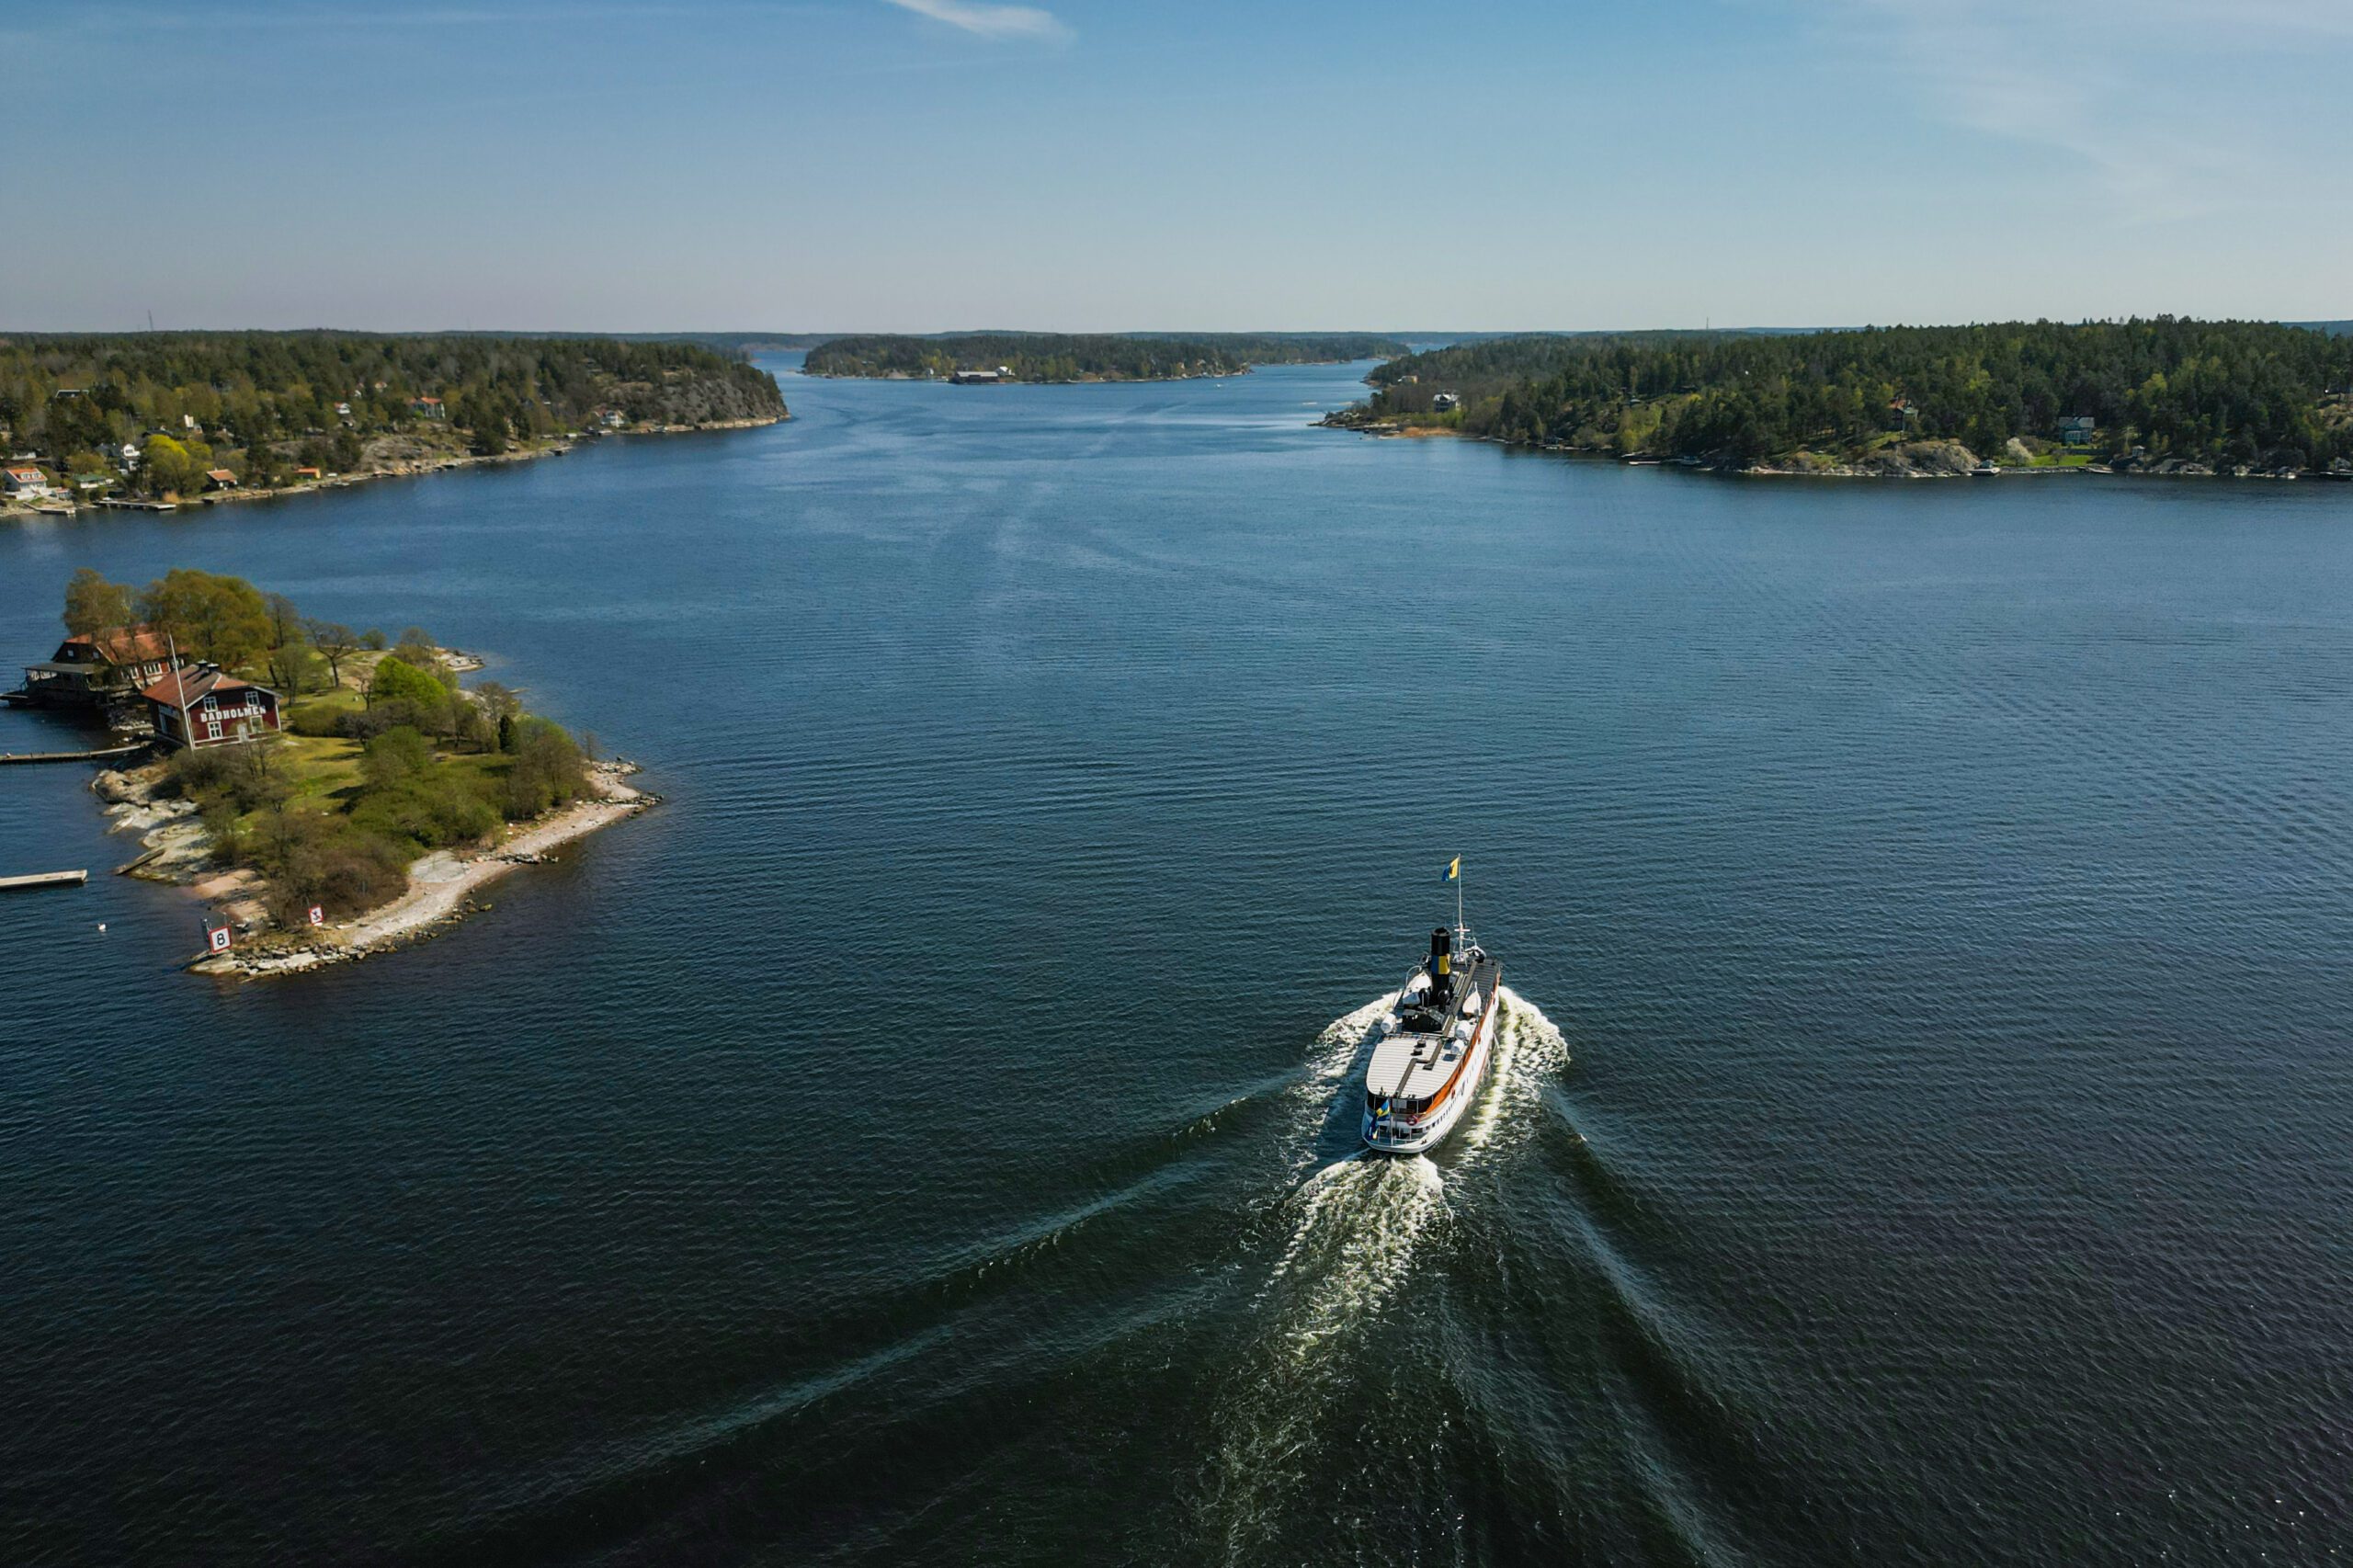 Ångfartyget Blidösund åker i vattnet i Stockholms skärgård, blå himmel och hav